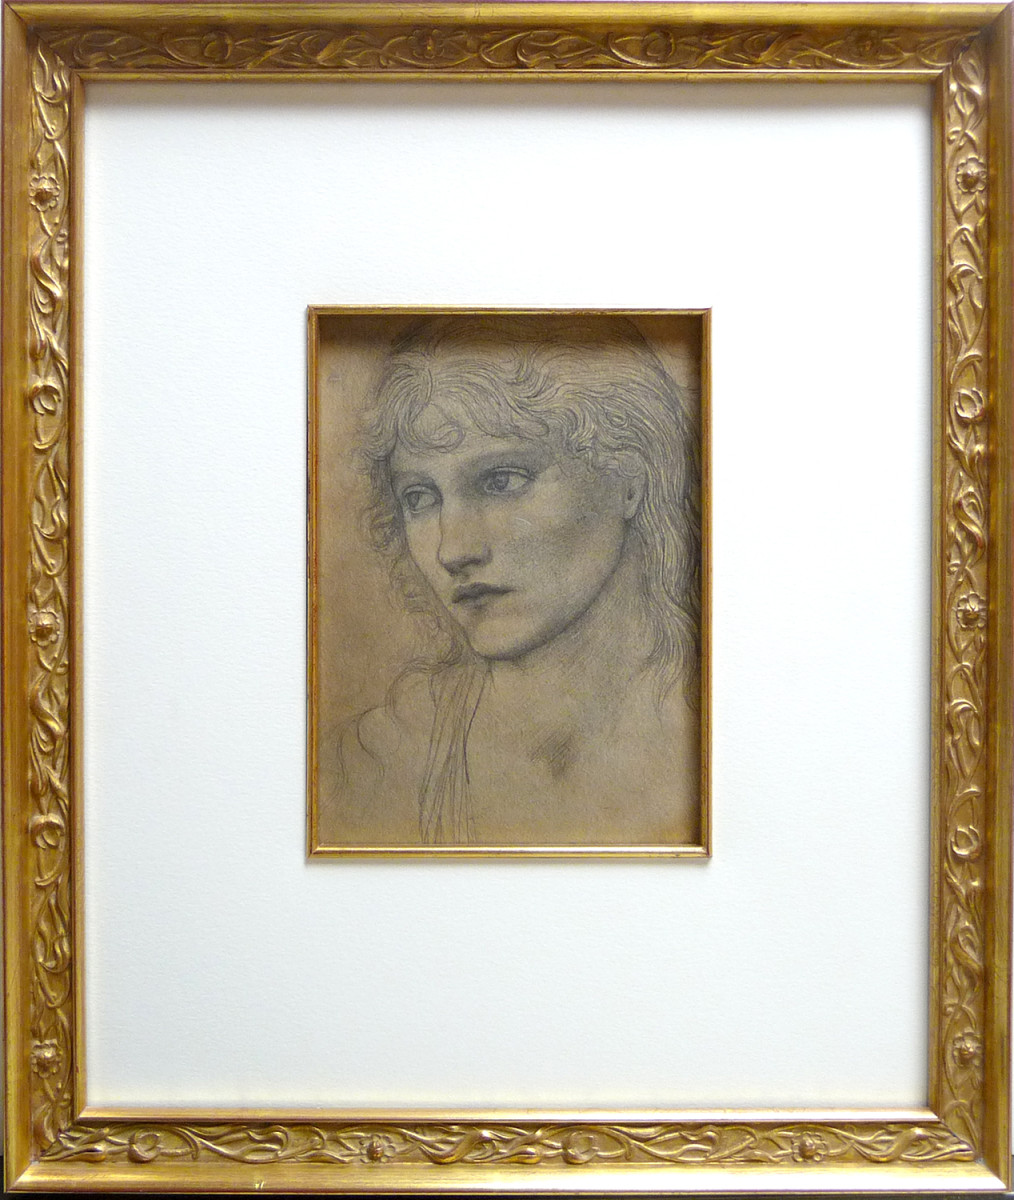 2071 - After Edward Burne-Jones by Frederick Hollyer (1837- 1933) 